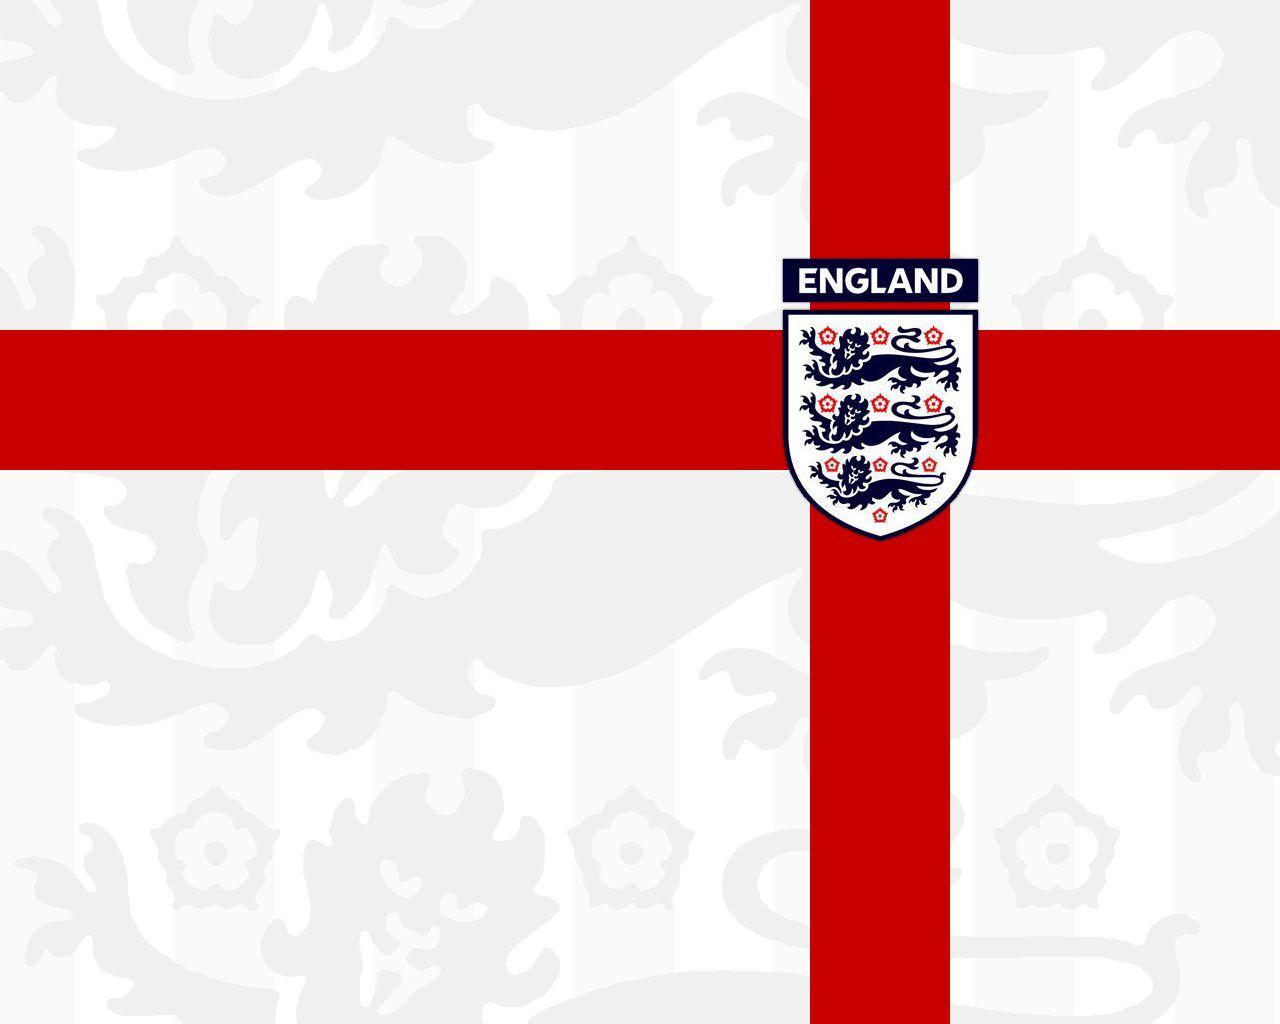 England Football Team Wallpaper. HD Wallpaper Zon